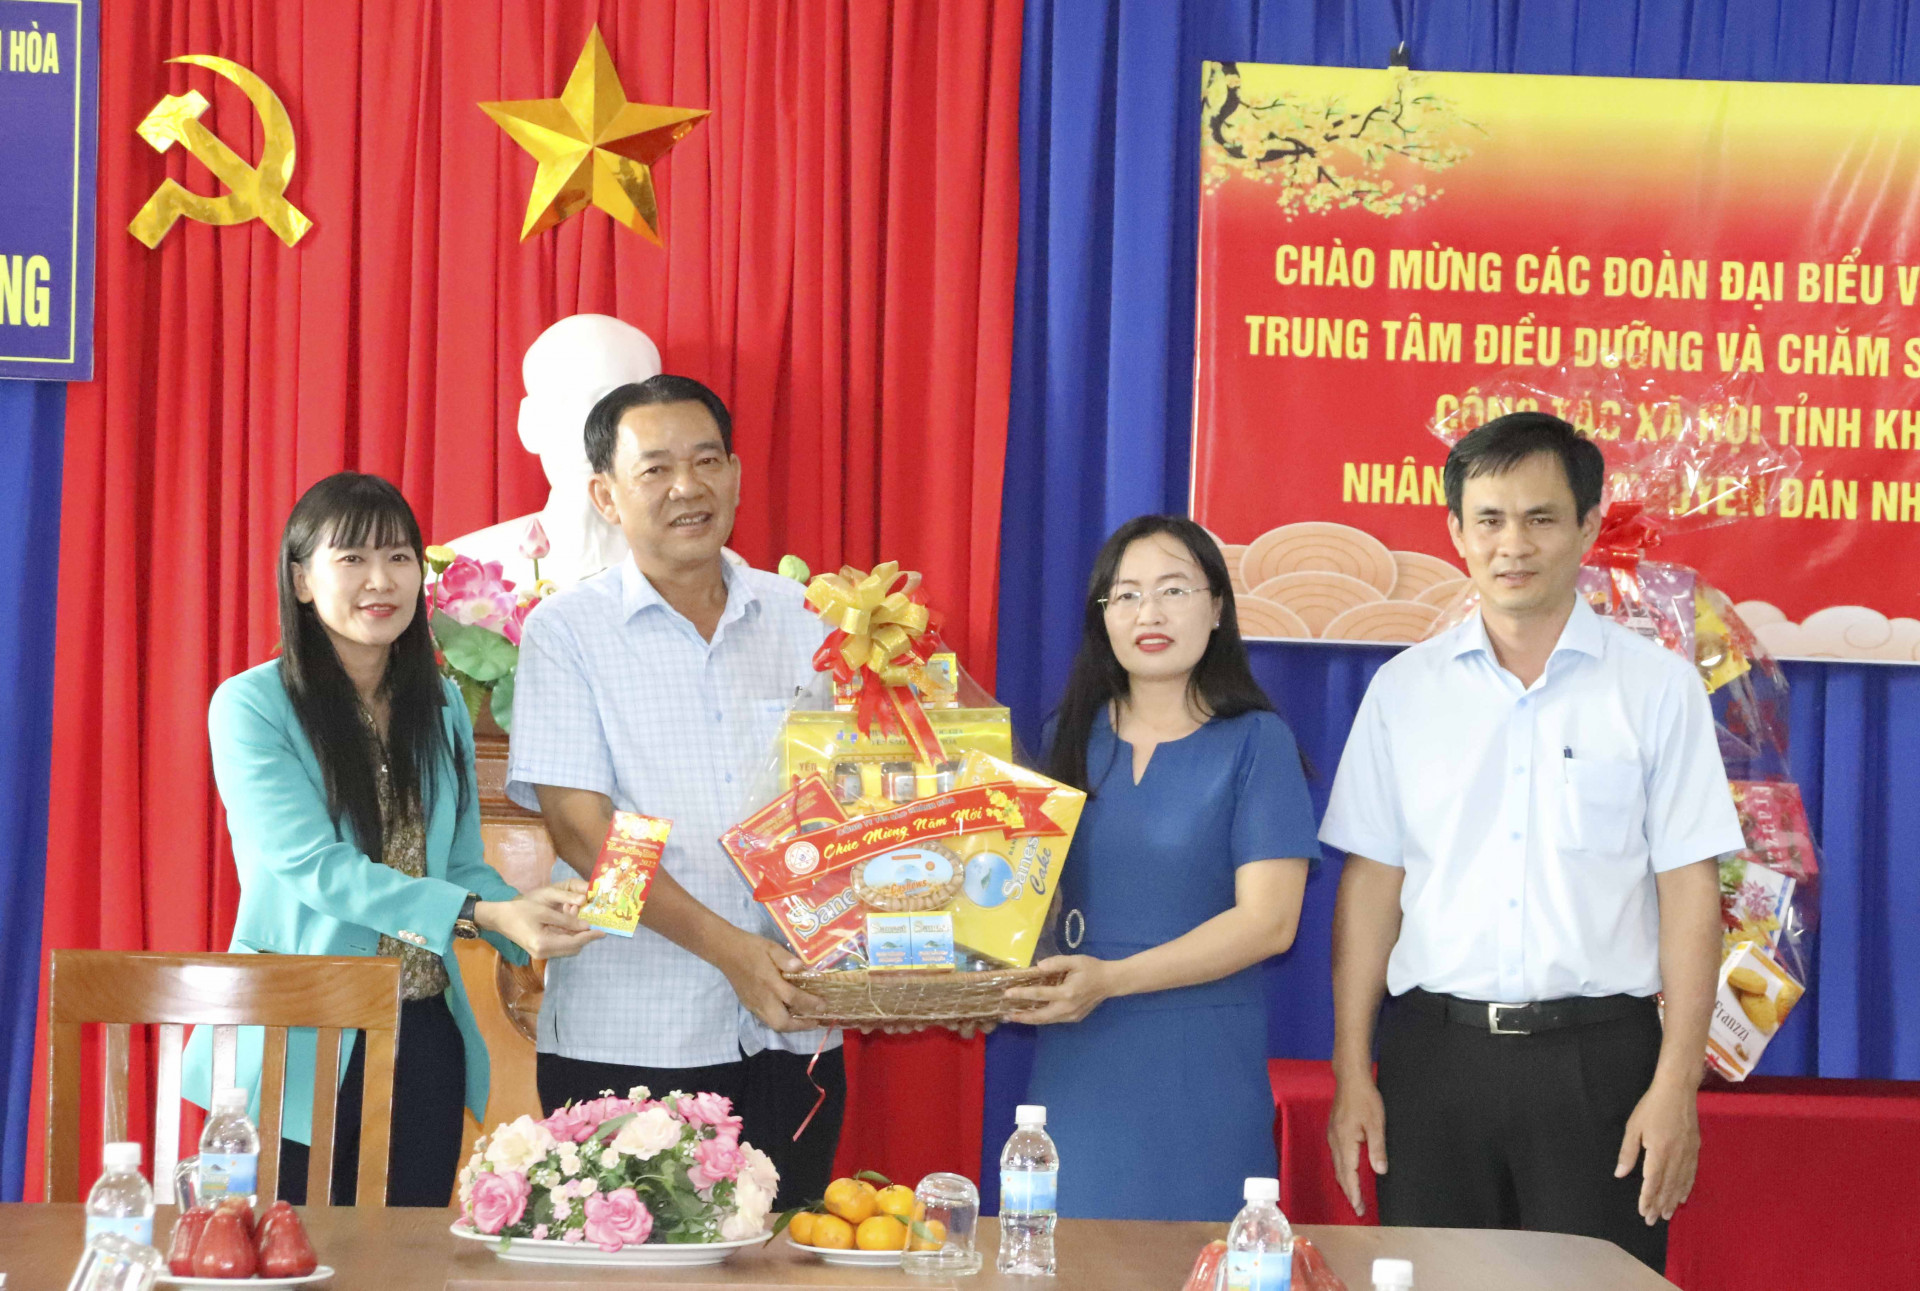 Công ty Yến Sào Khánh Hòa tặng quà cho nhân viên Trung tâm Điều dưỡng và Chăm sóc người có công.